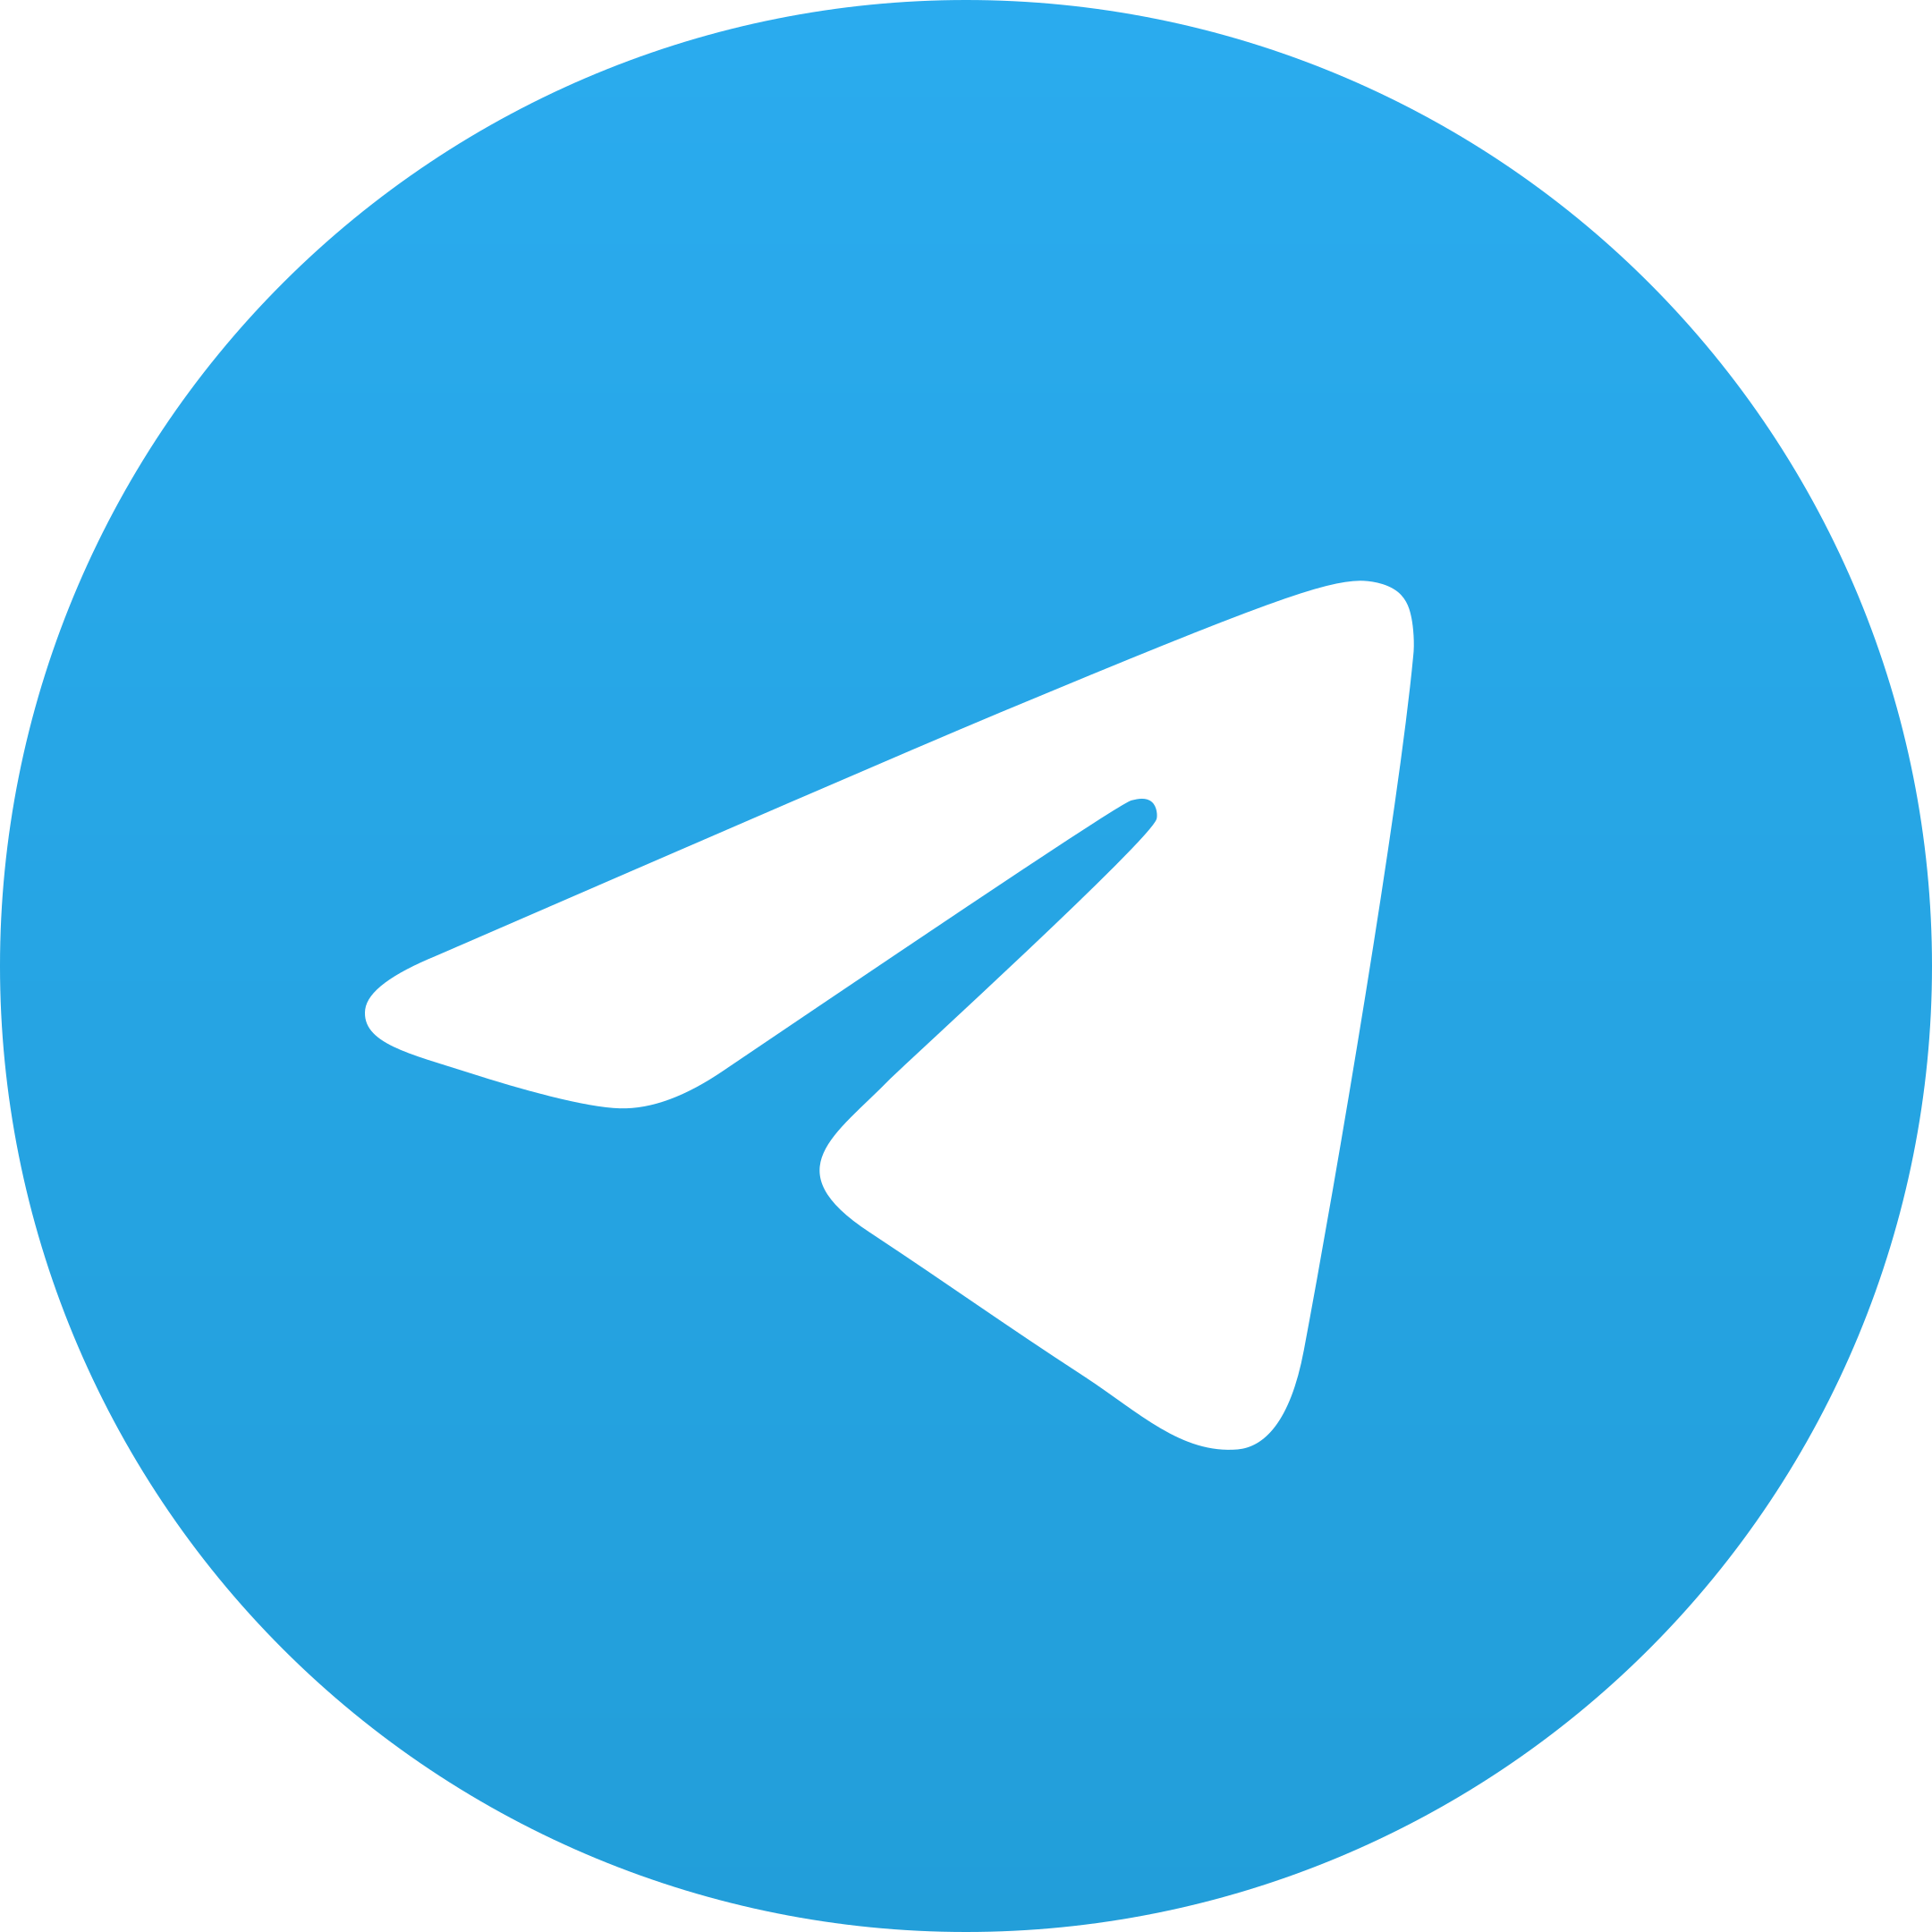 telegram logo 1 1 - Telegram Logo